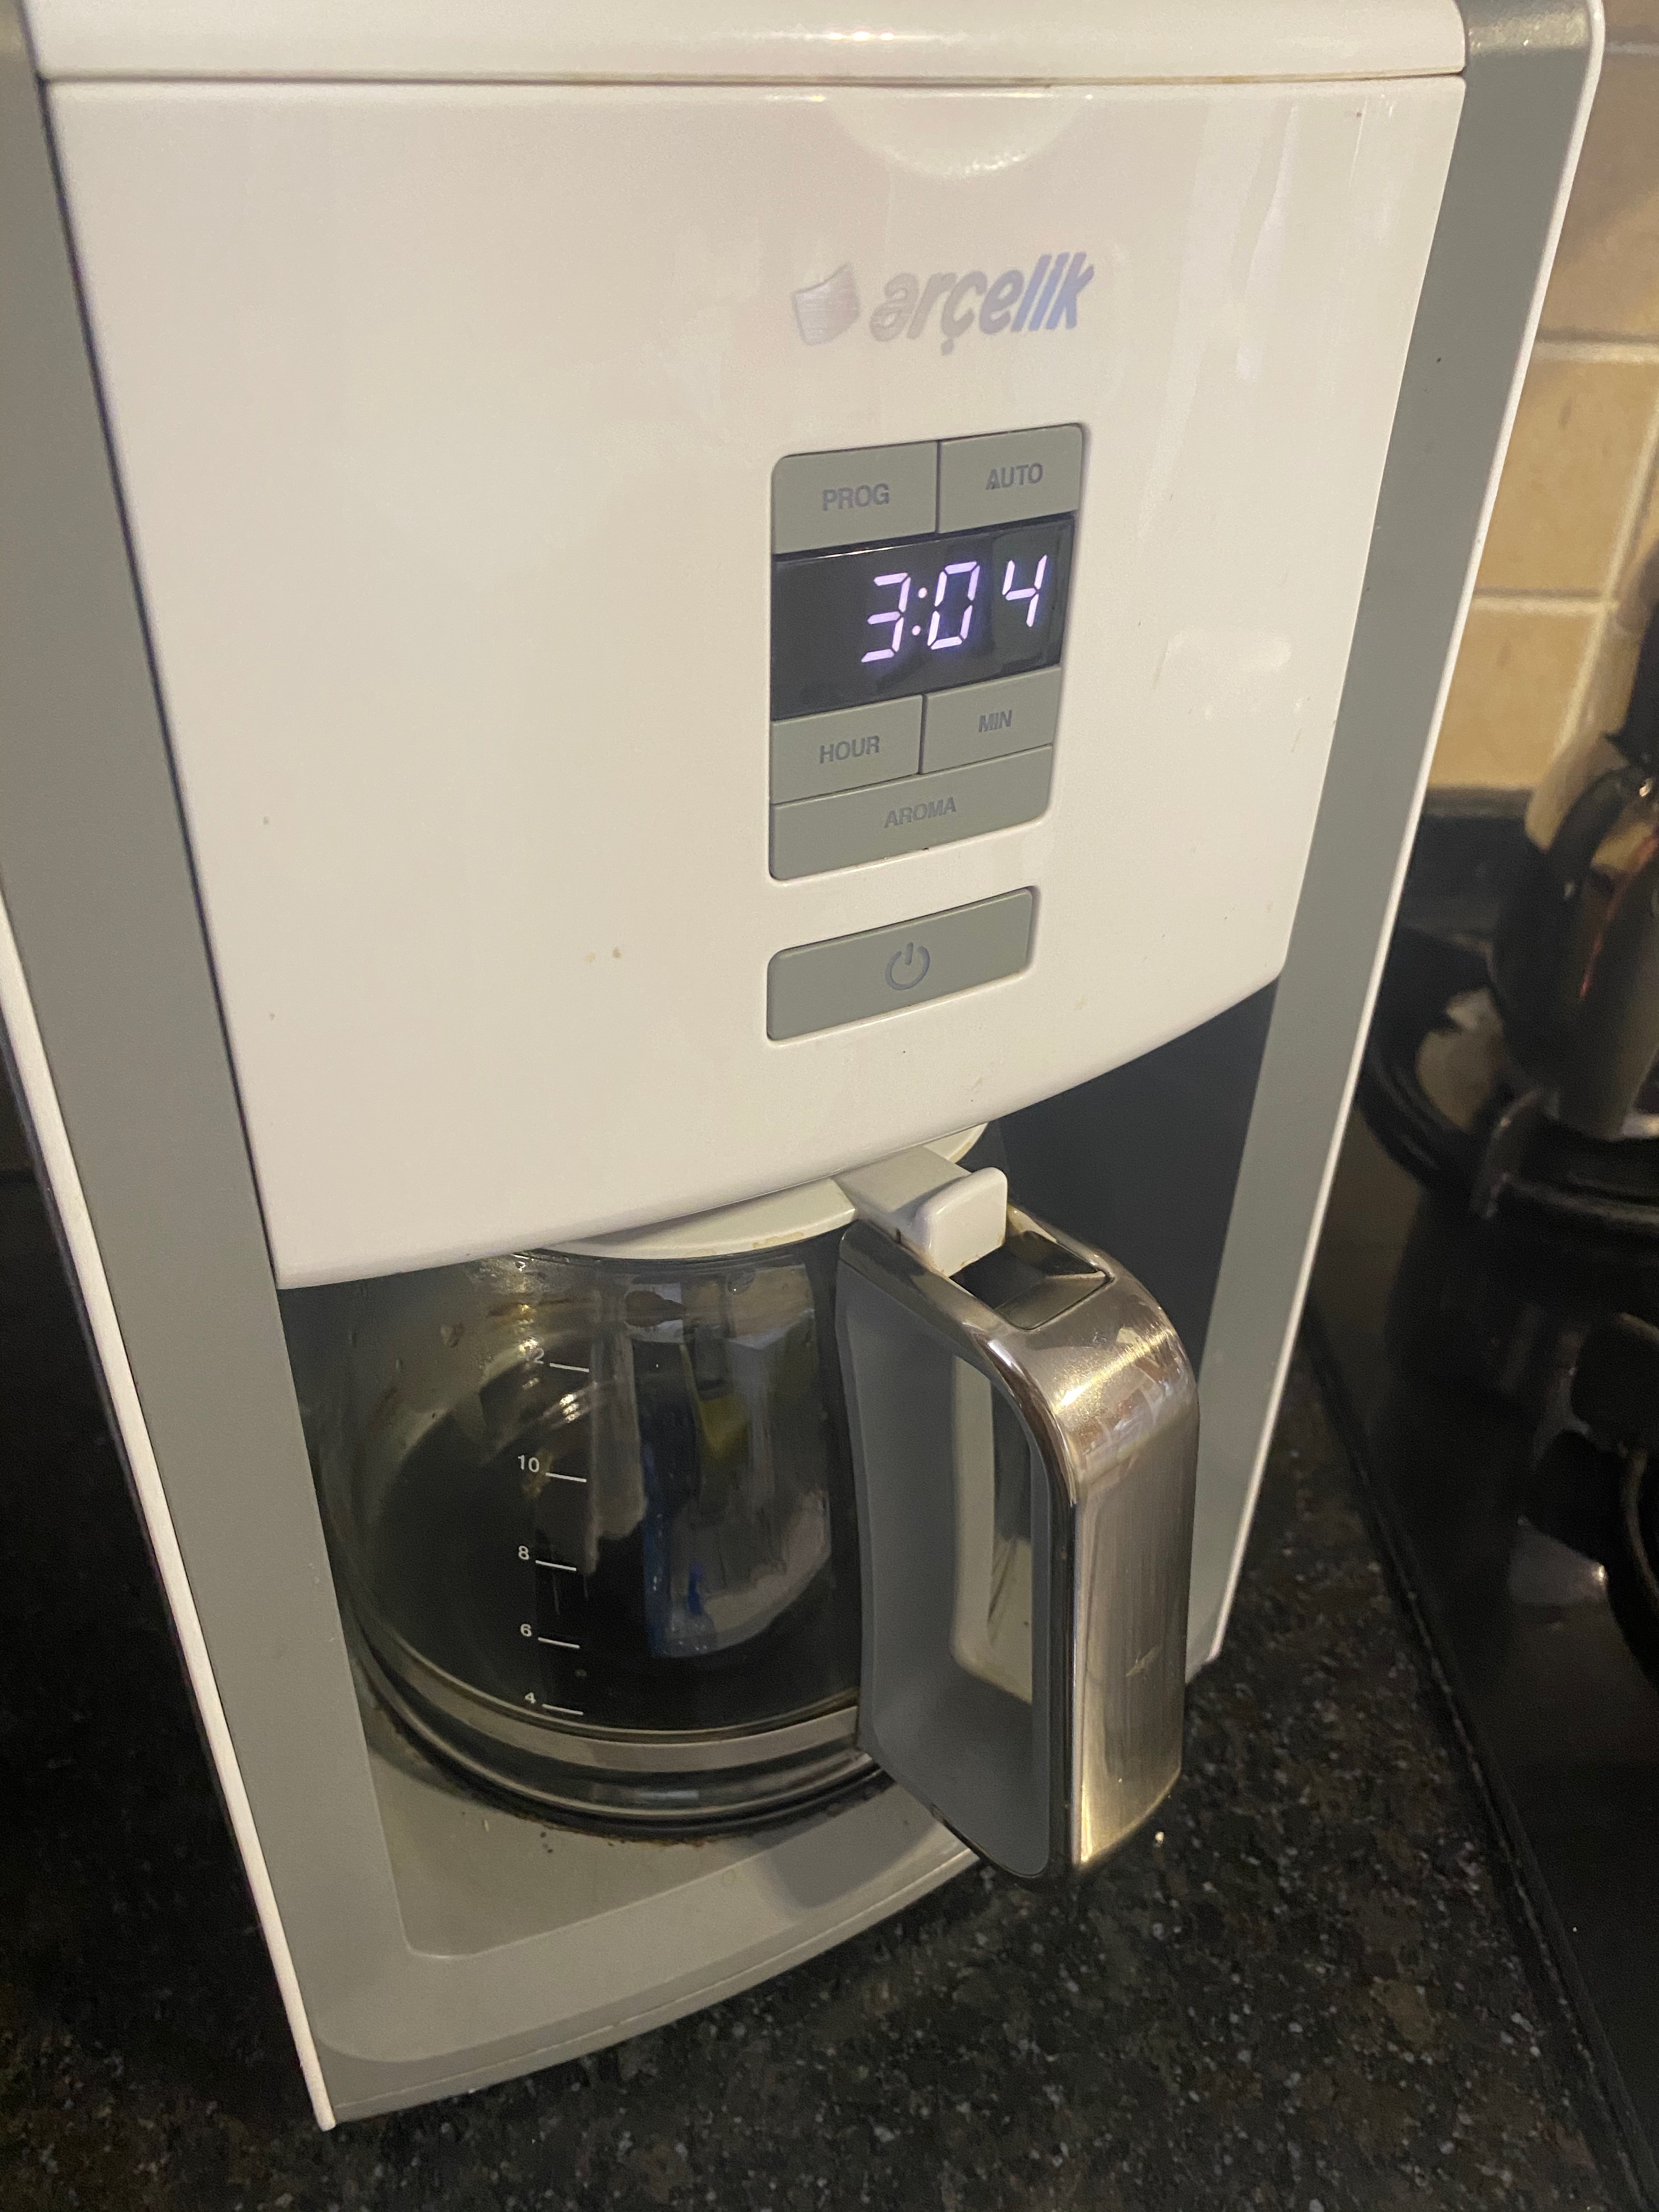 Satılık Arçelik K 8115 KM İnLove Filtre Kahve Makinesi | DonanımHaber Forum